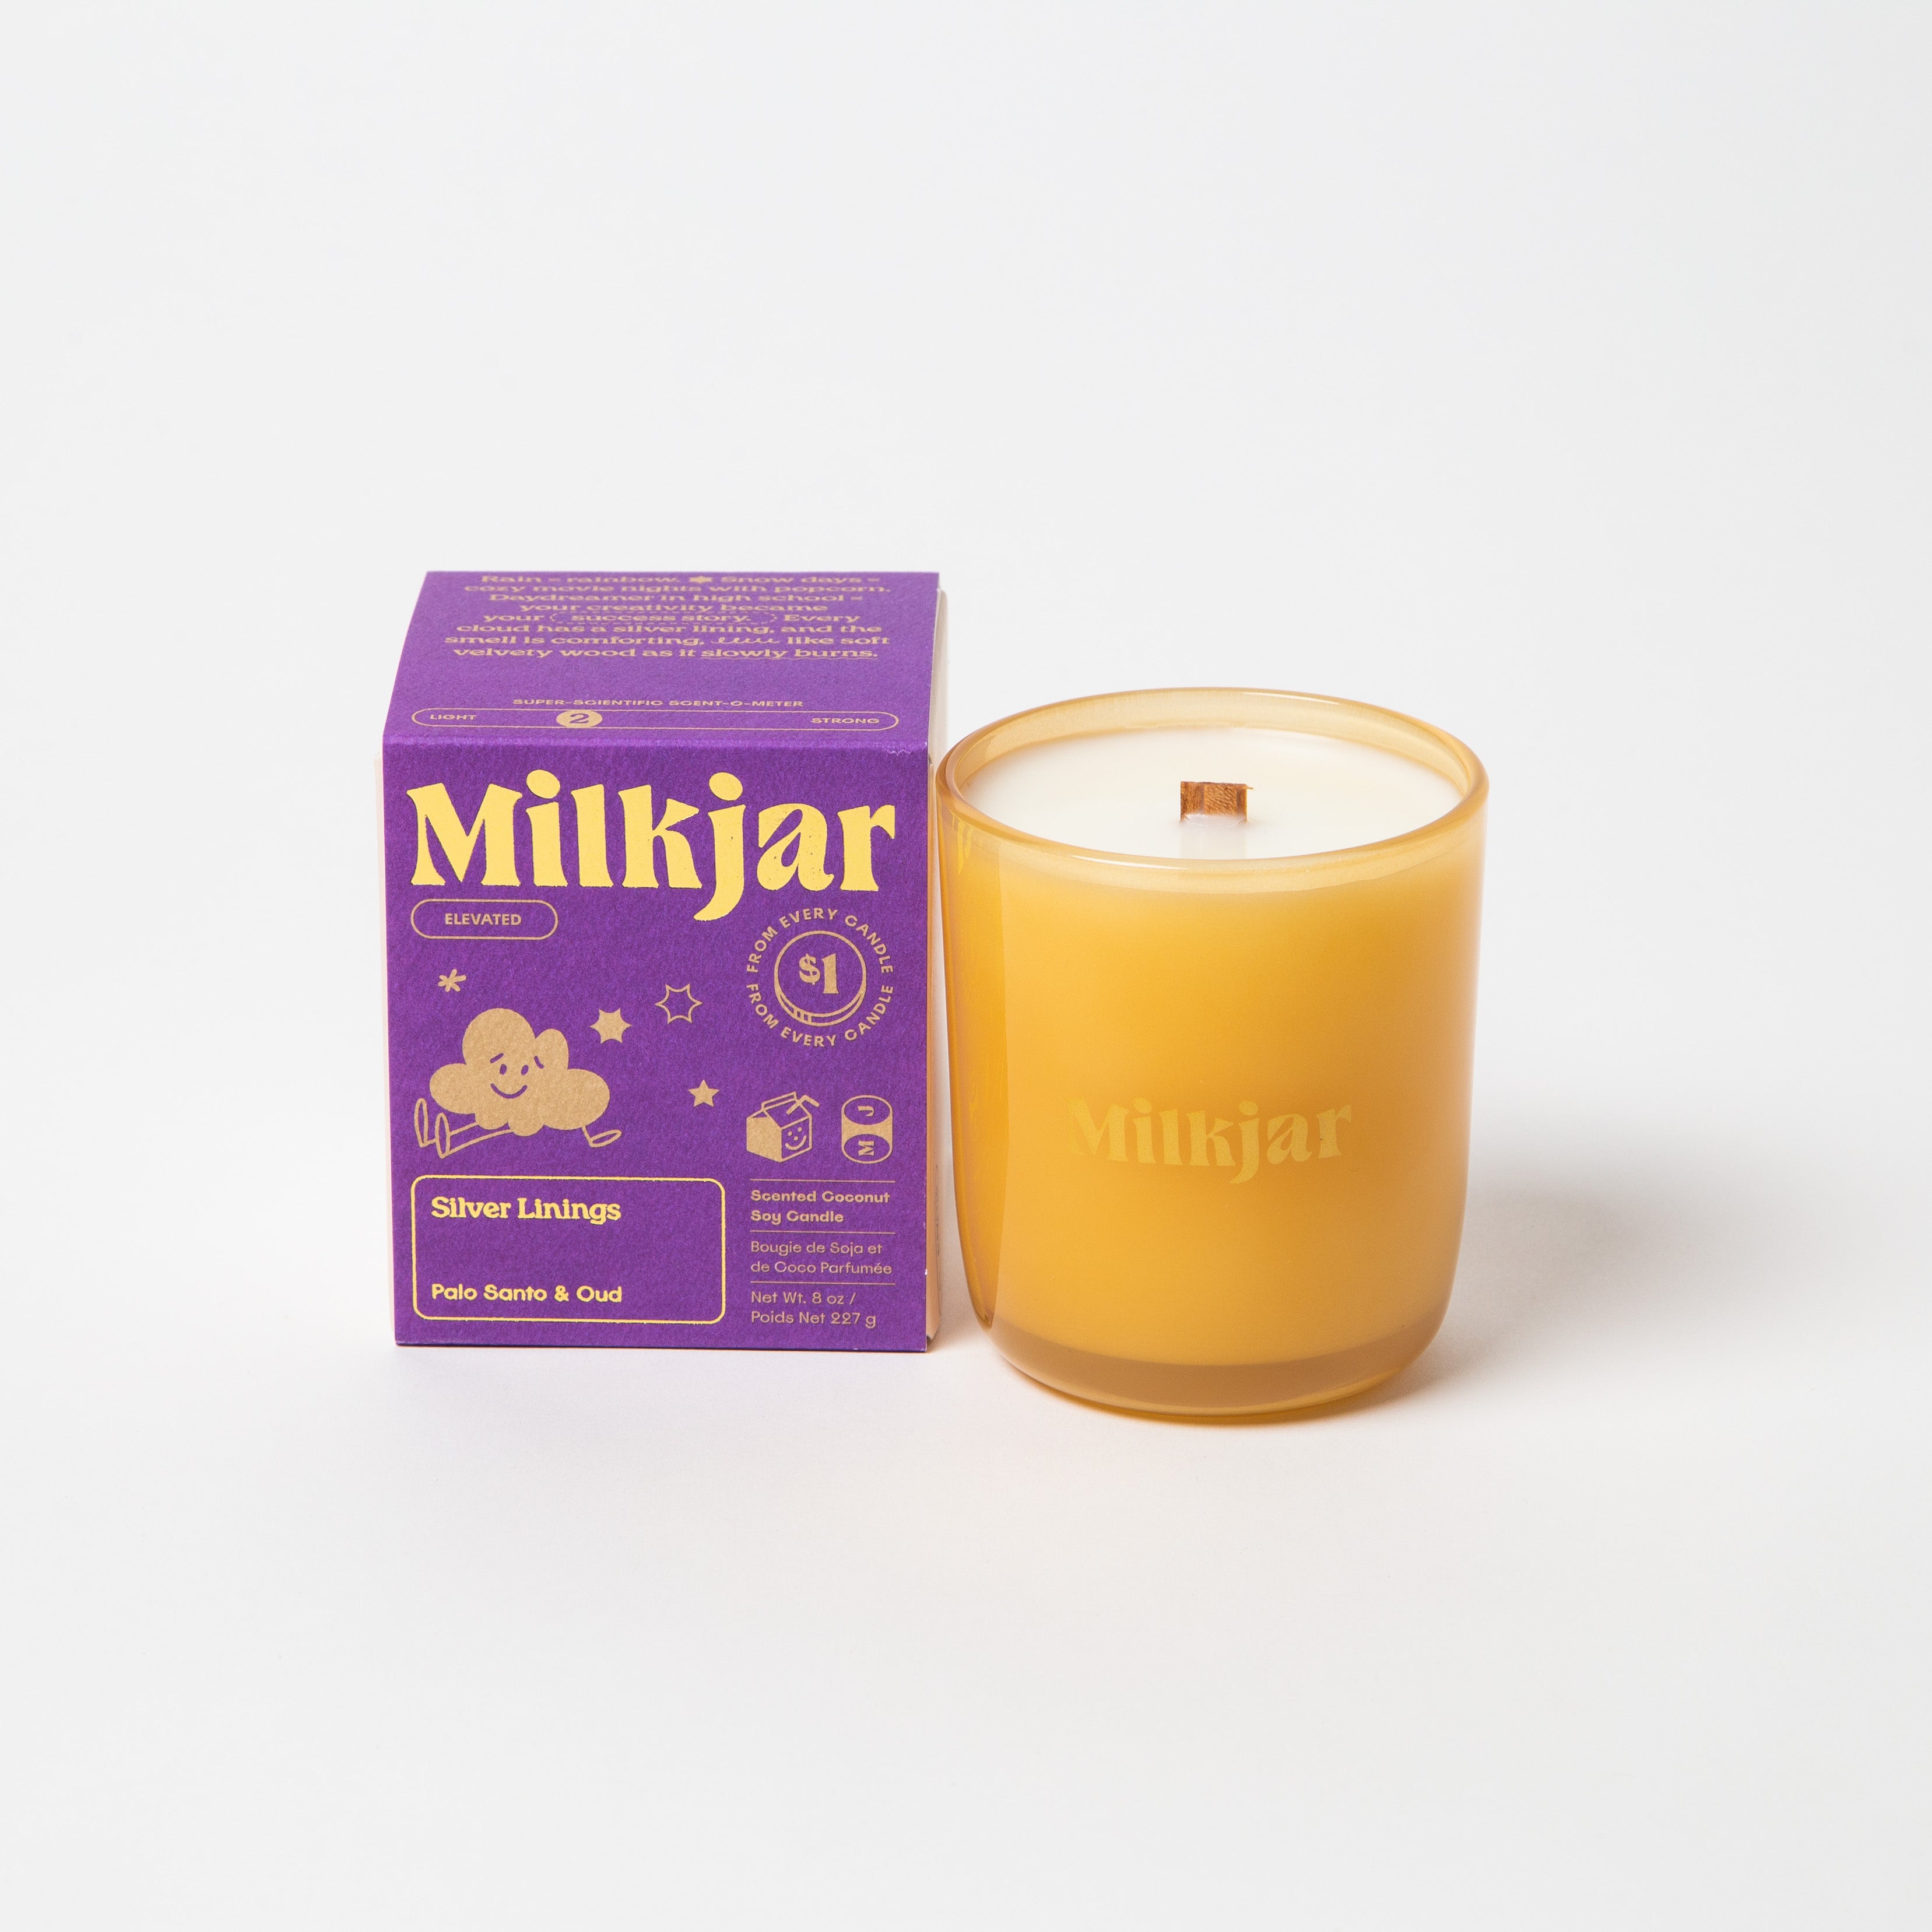 Milk-Jar-Candle-Silver-Linings-3558.jpg